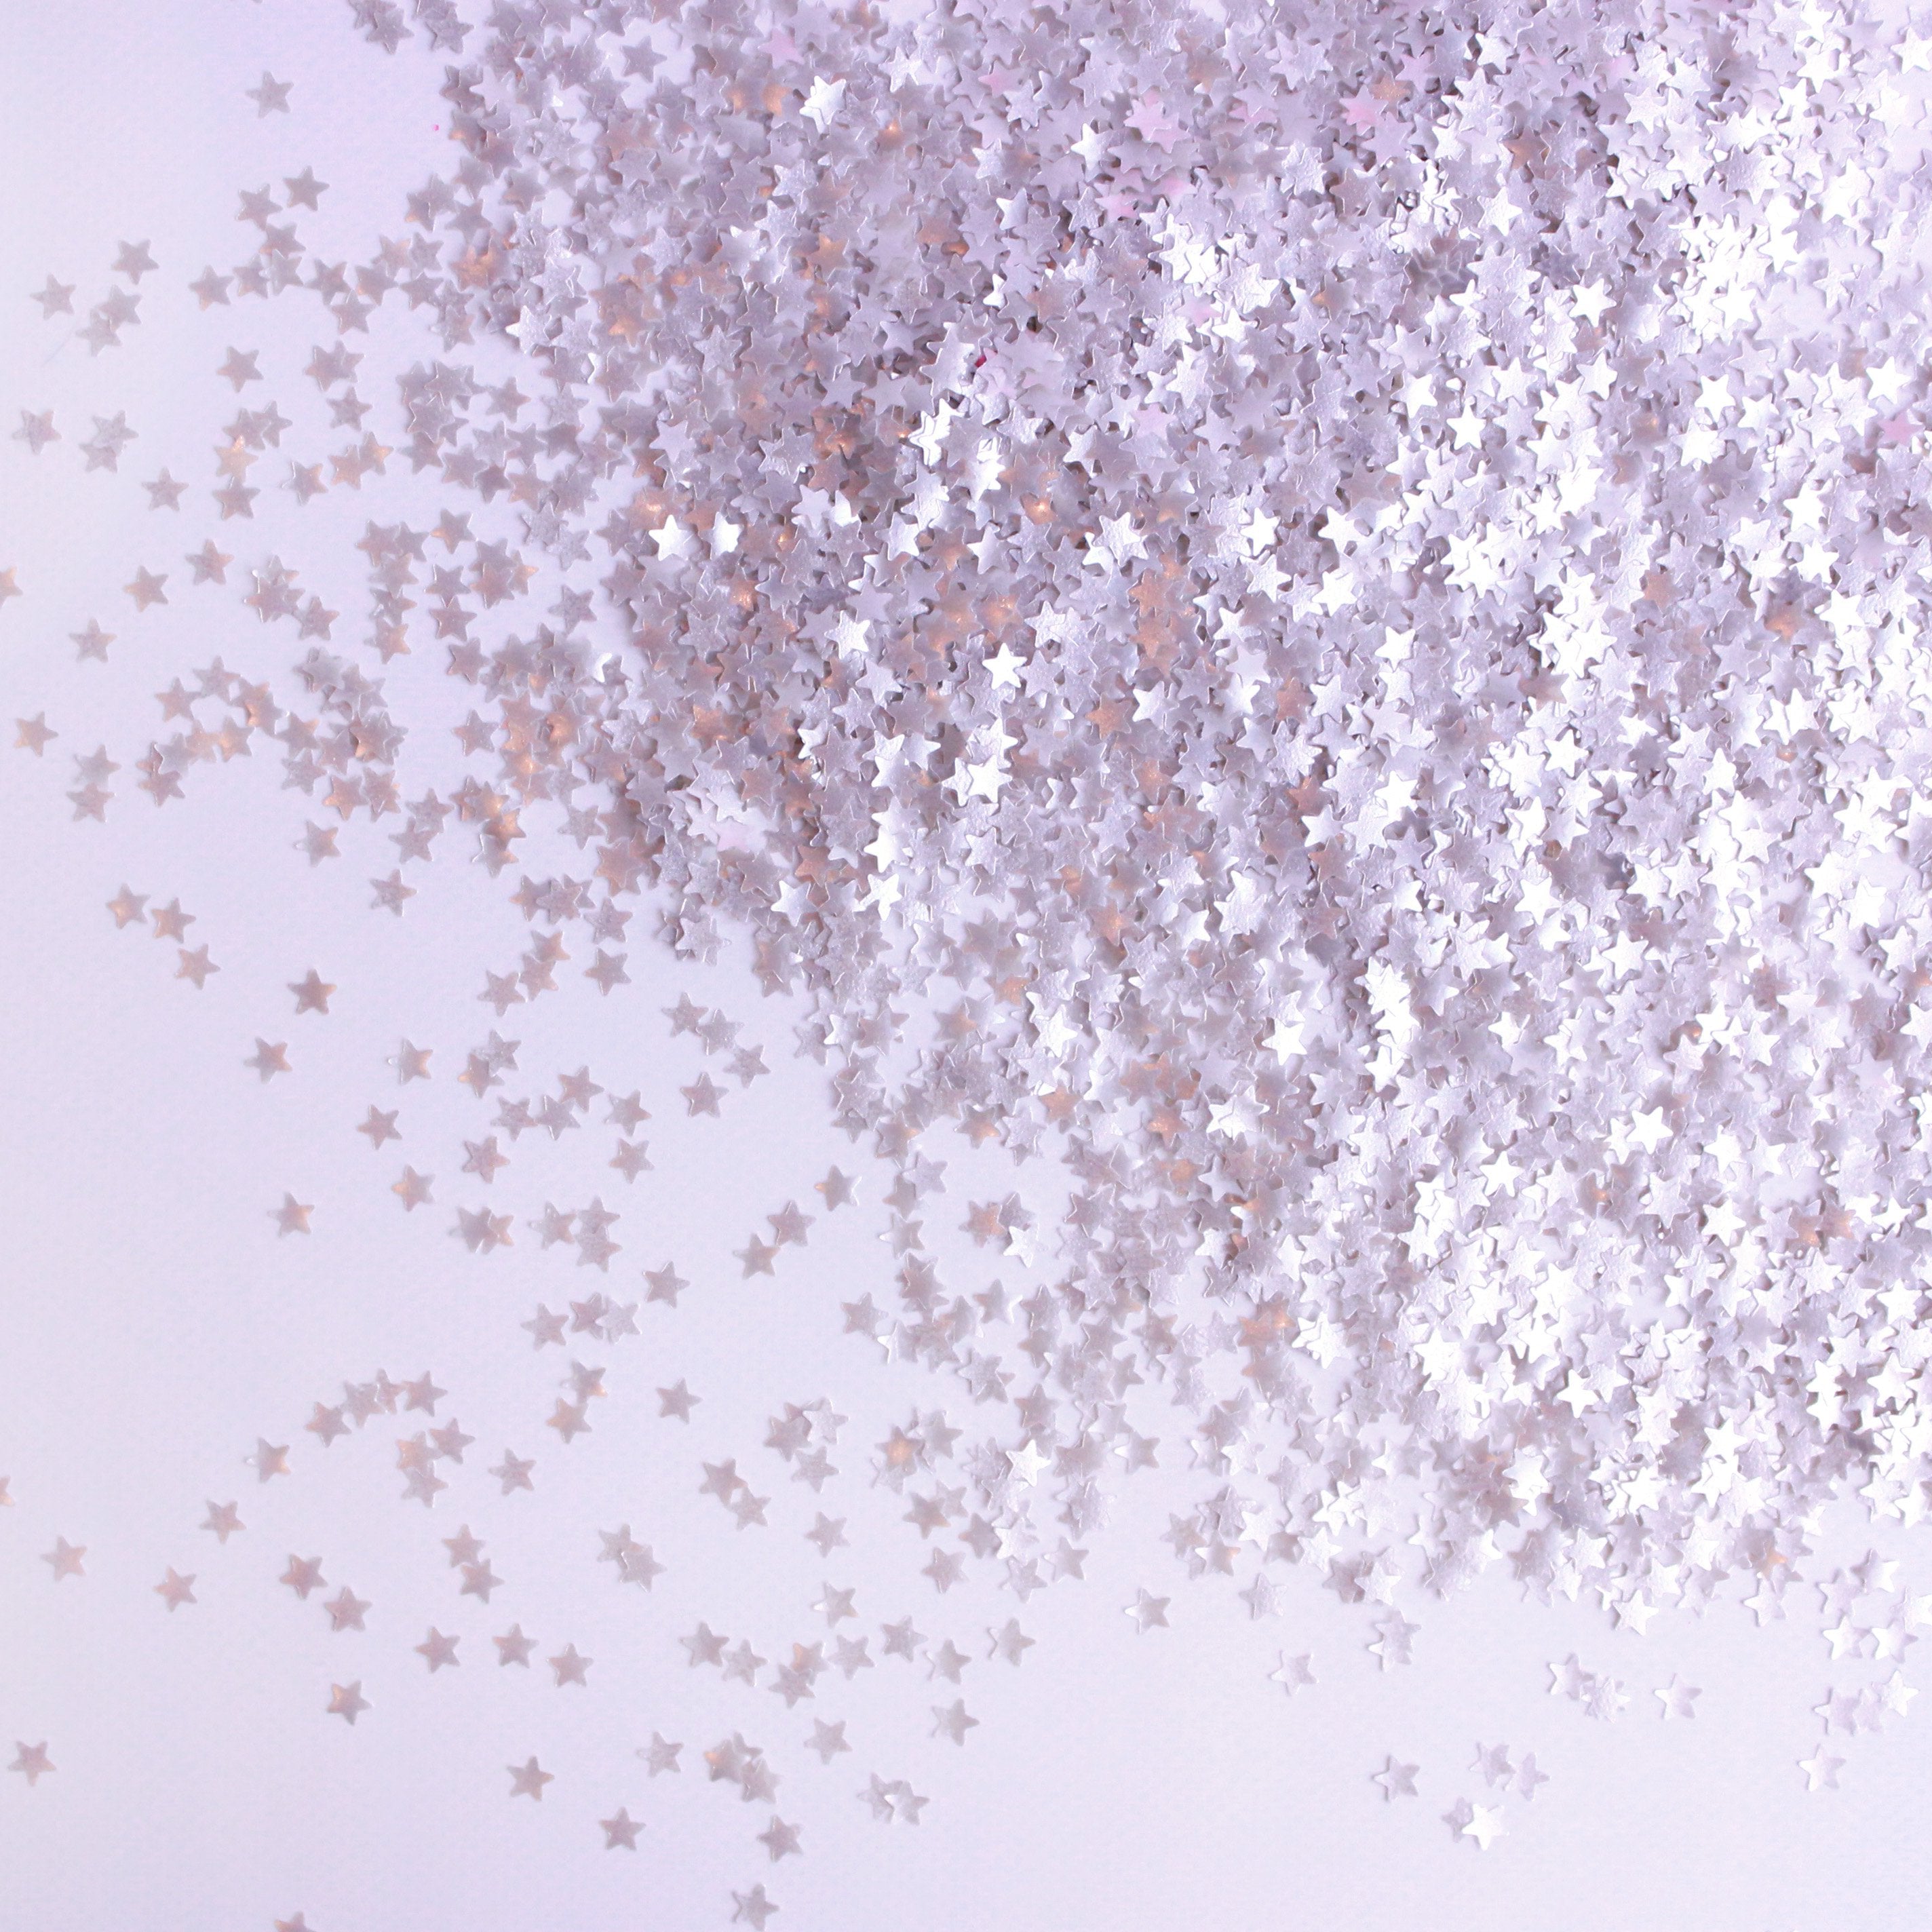 purple glitter stars